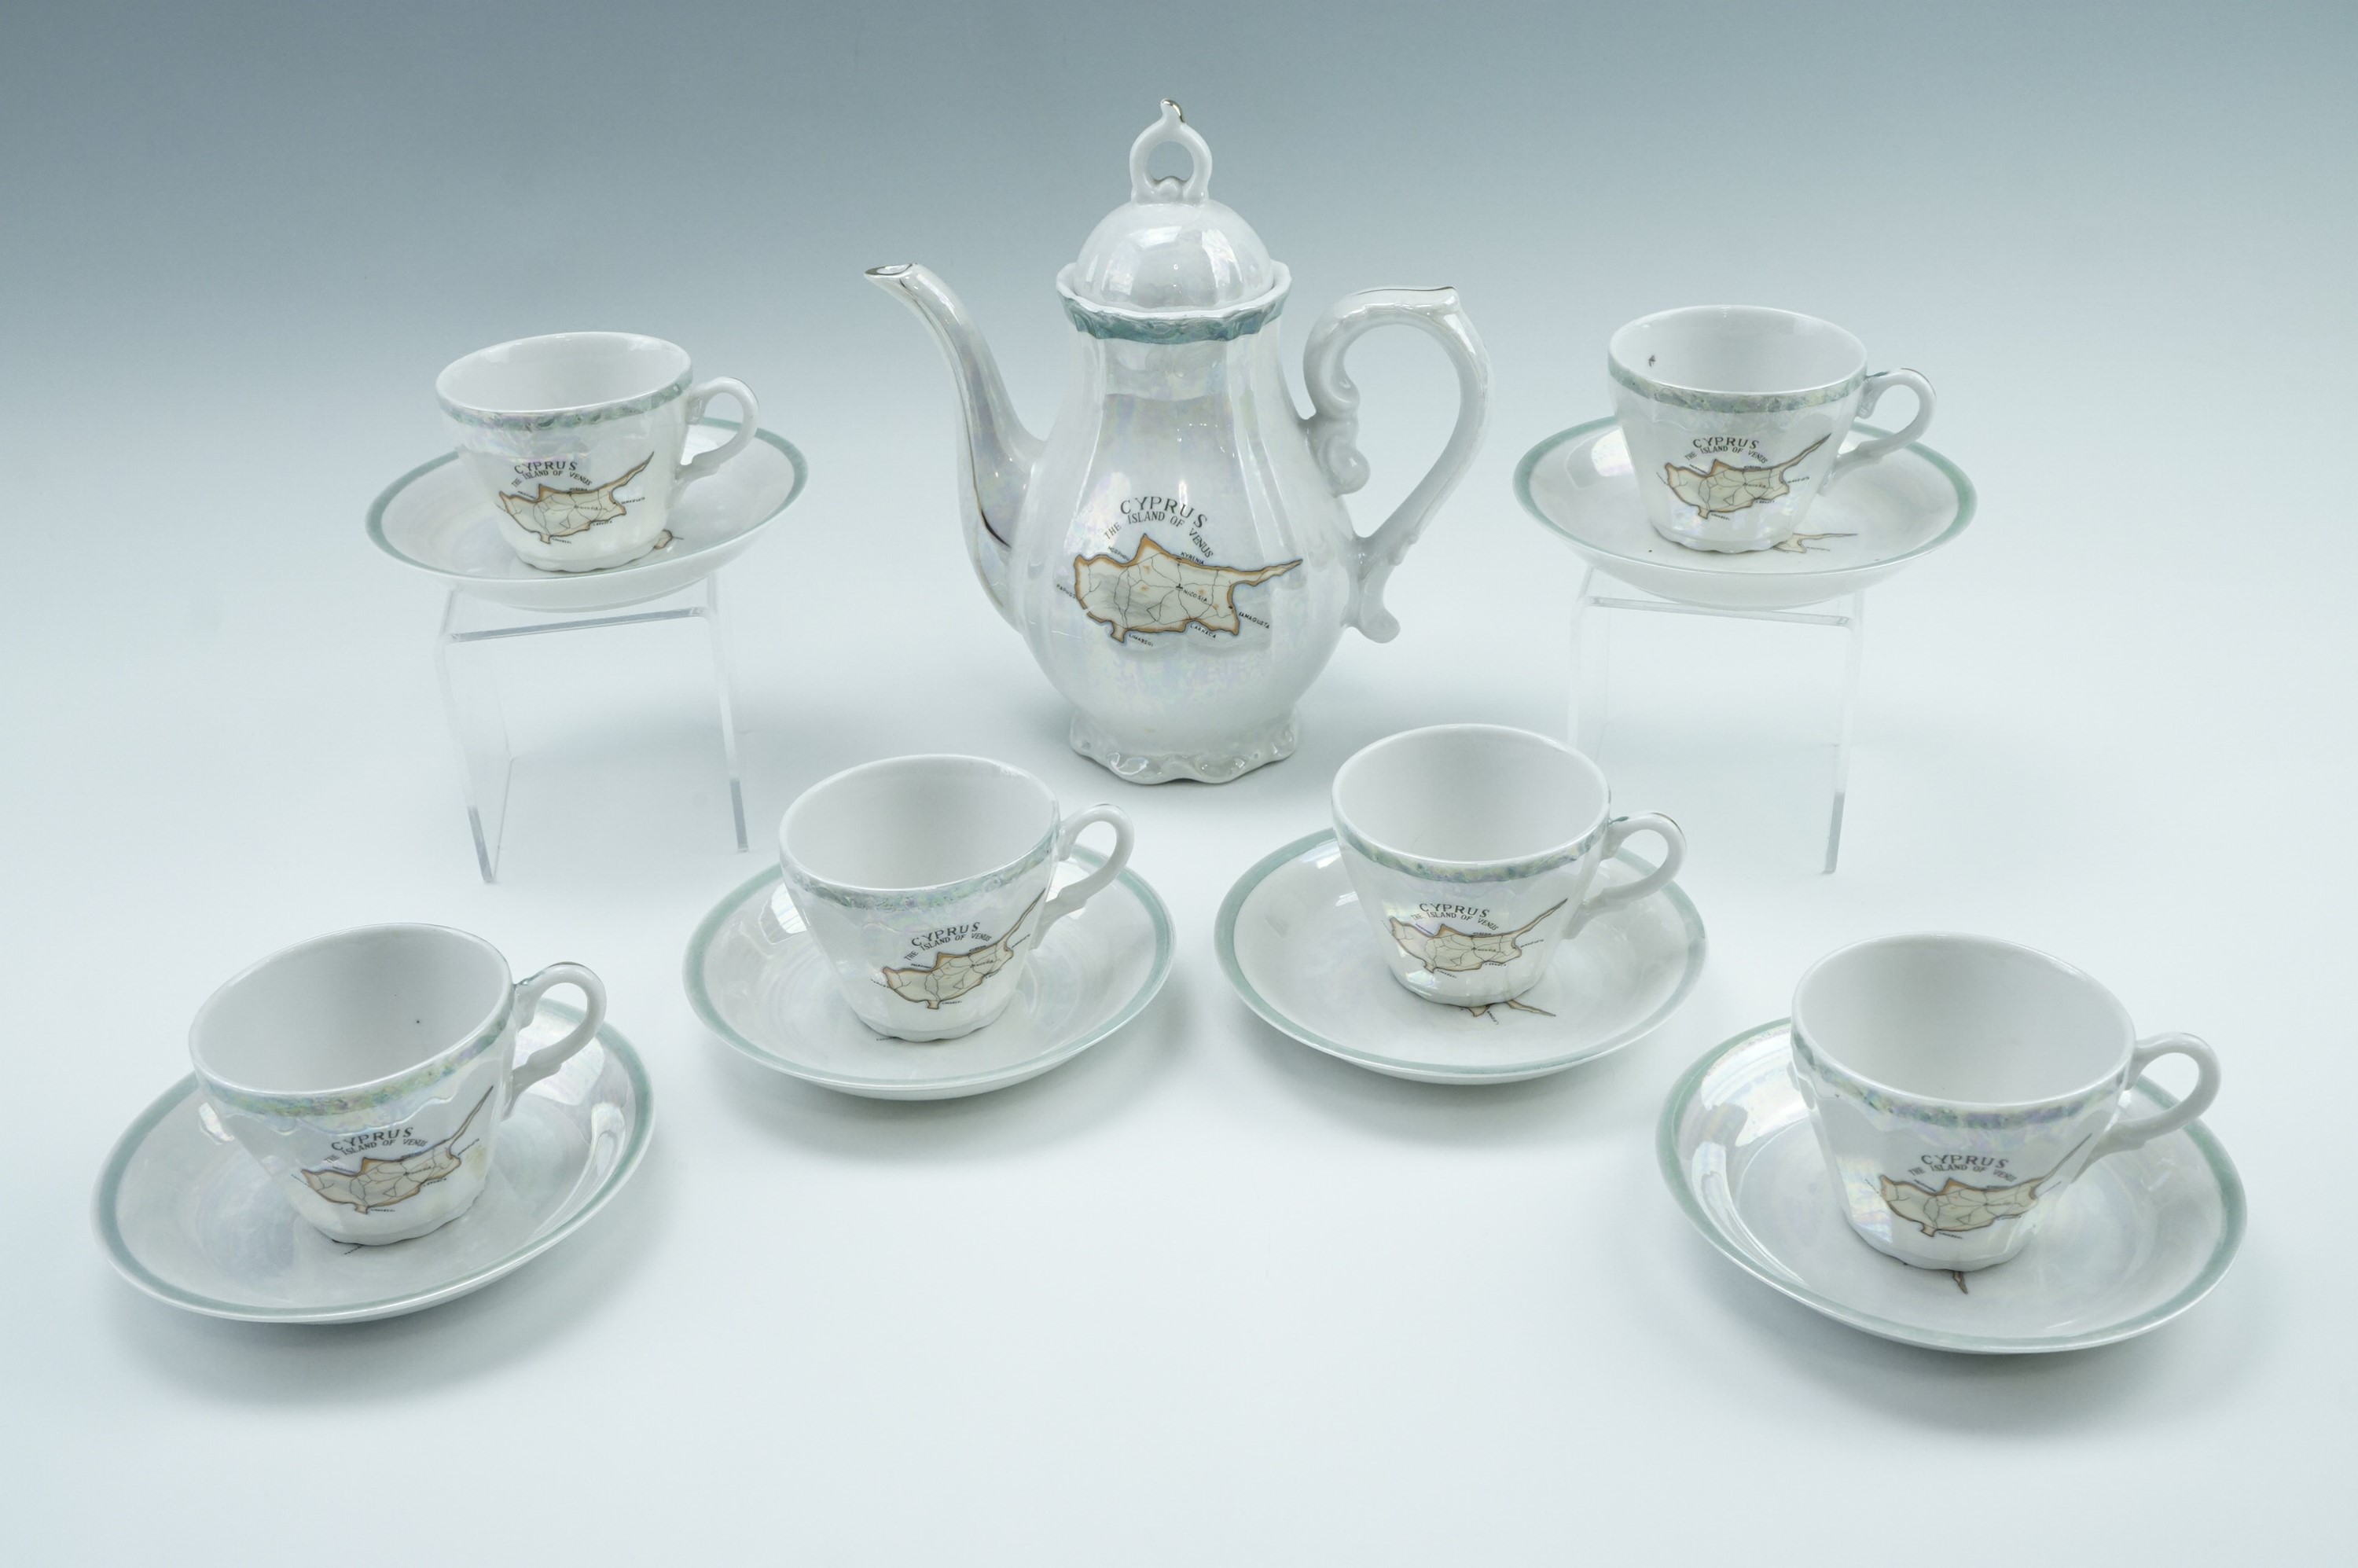 A 1950s Cyprus souvenir lustre tea set